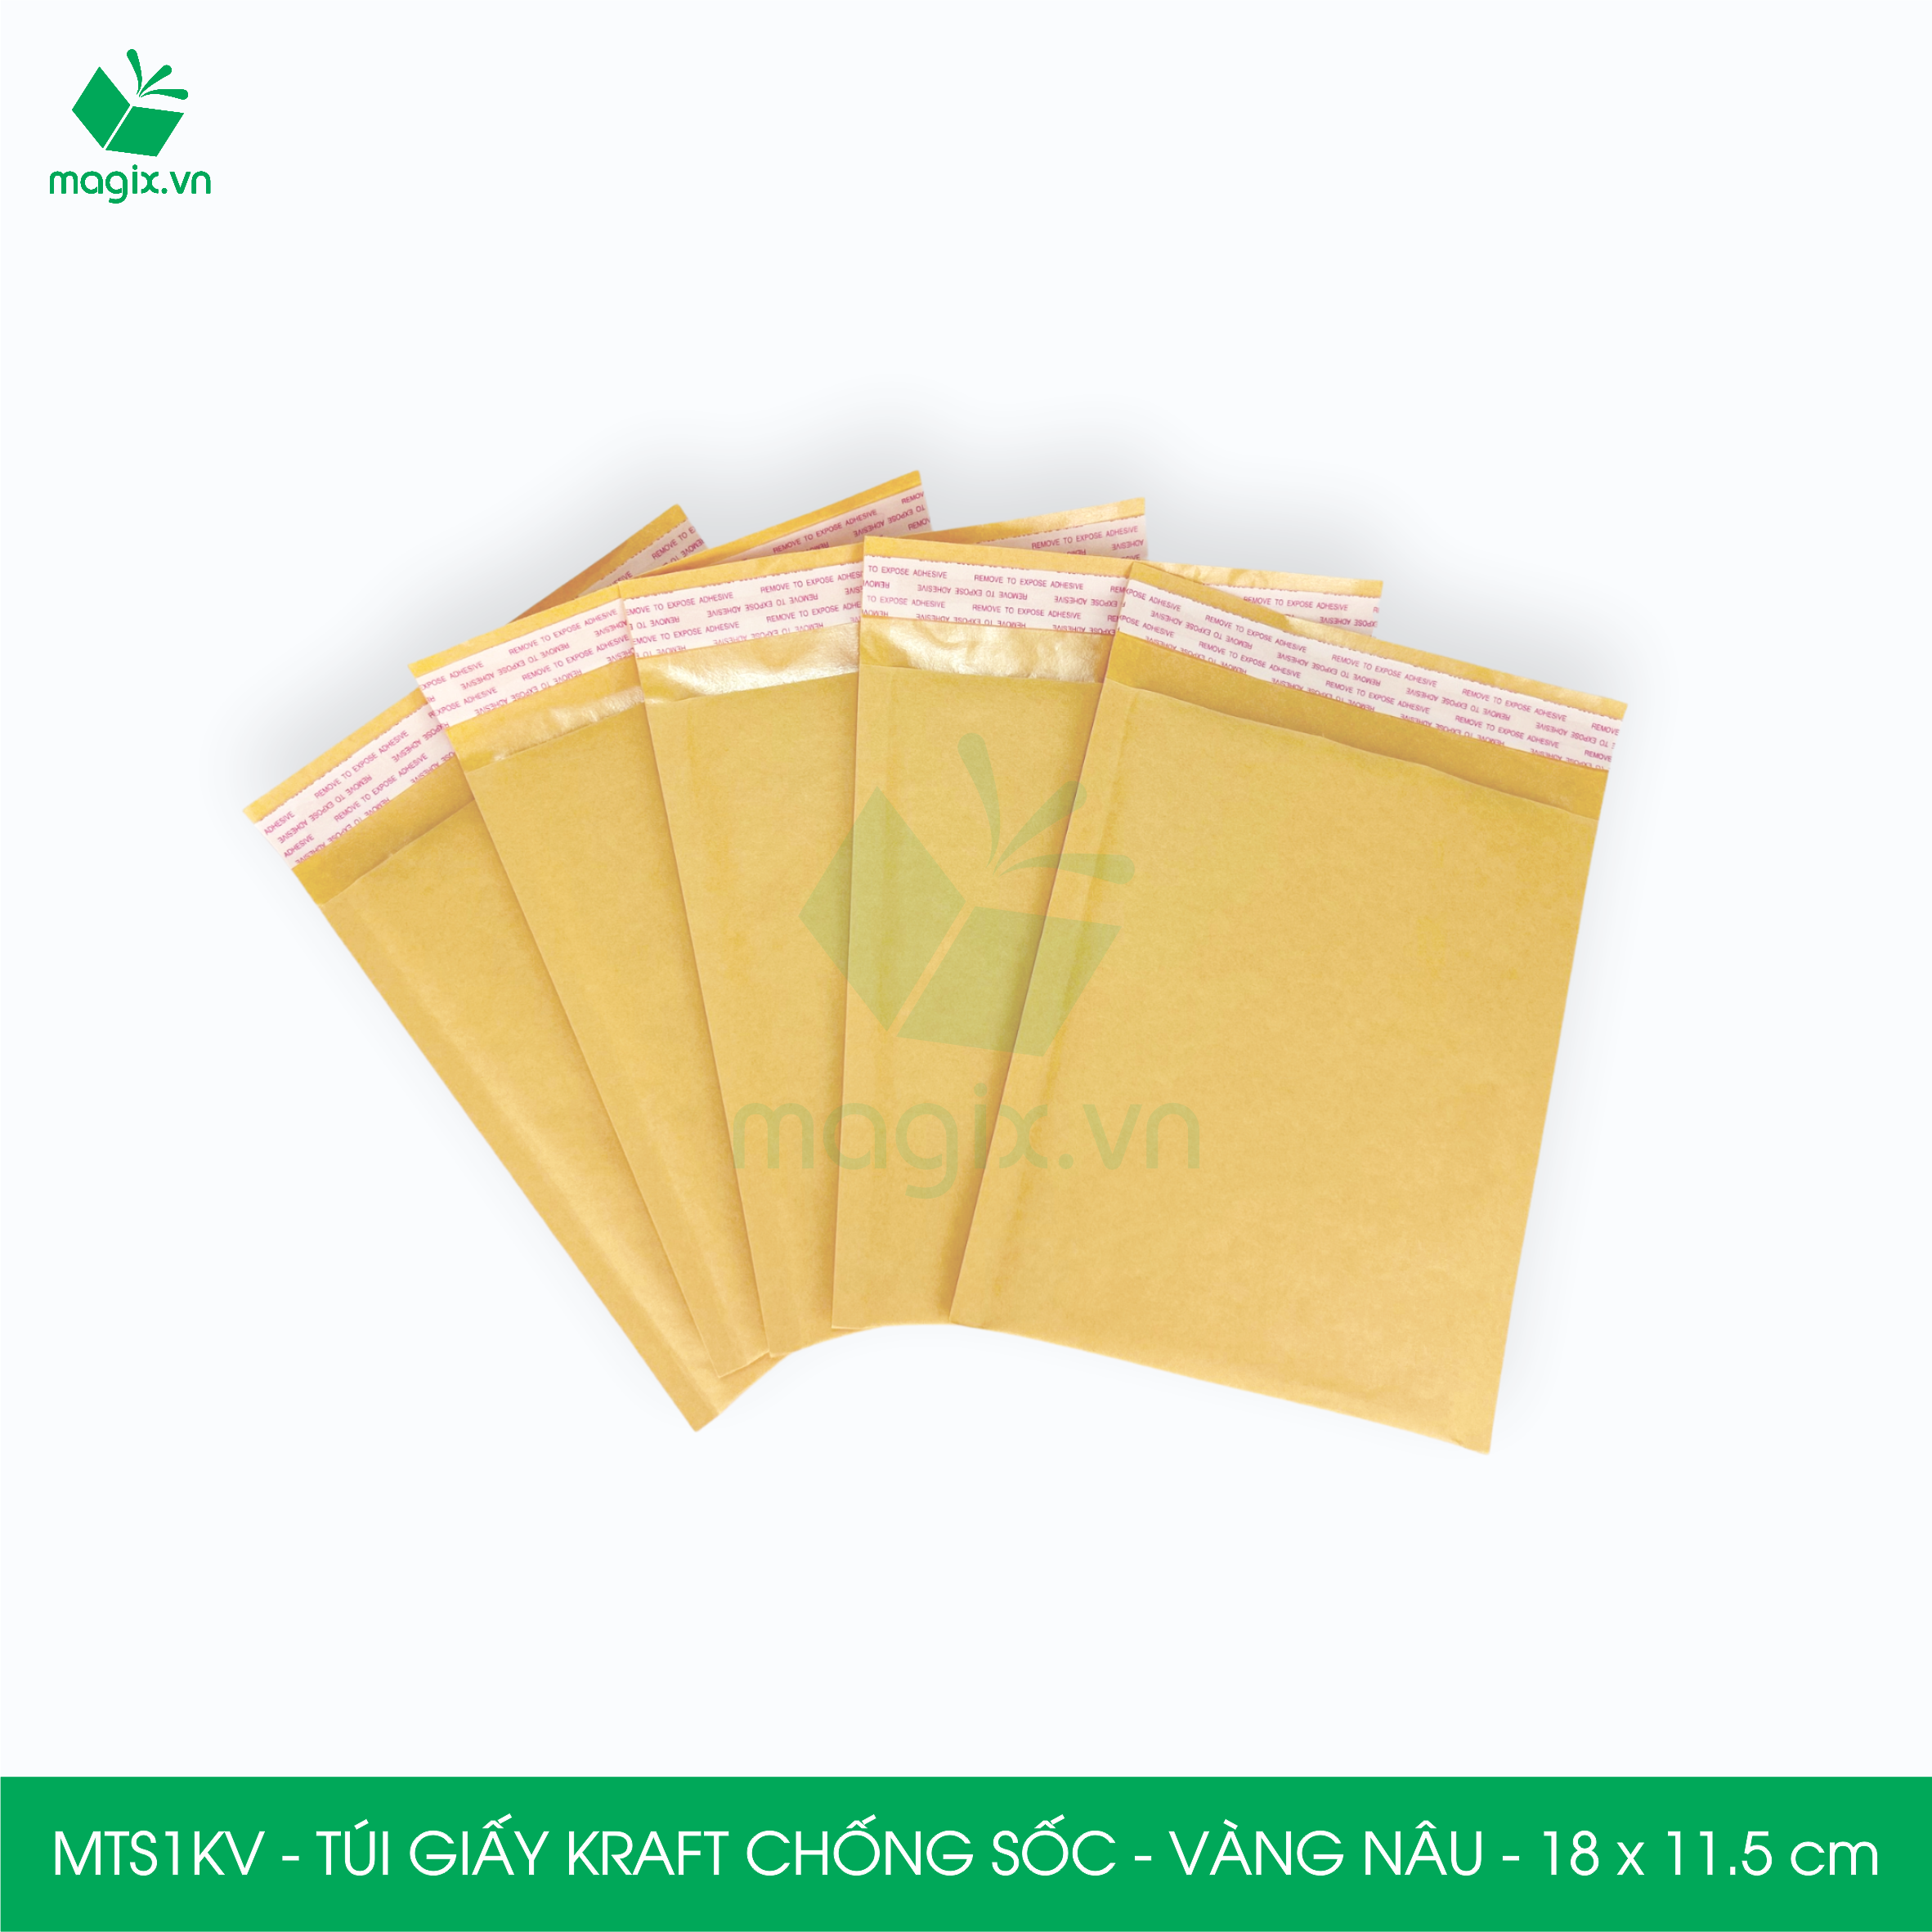 MTS1KV - 18x11.5 cm - 50 túi giấy Kraft bọc bóng khí gói hàng chống sốc màu vàng nâu